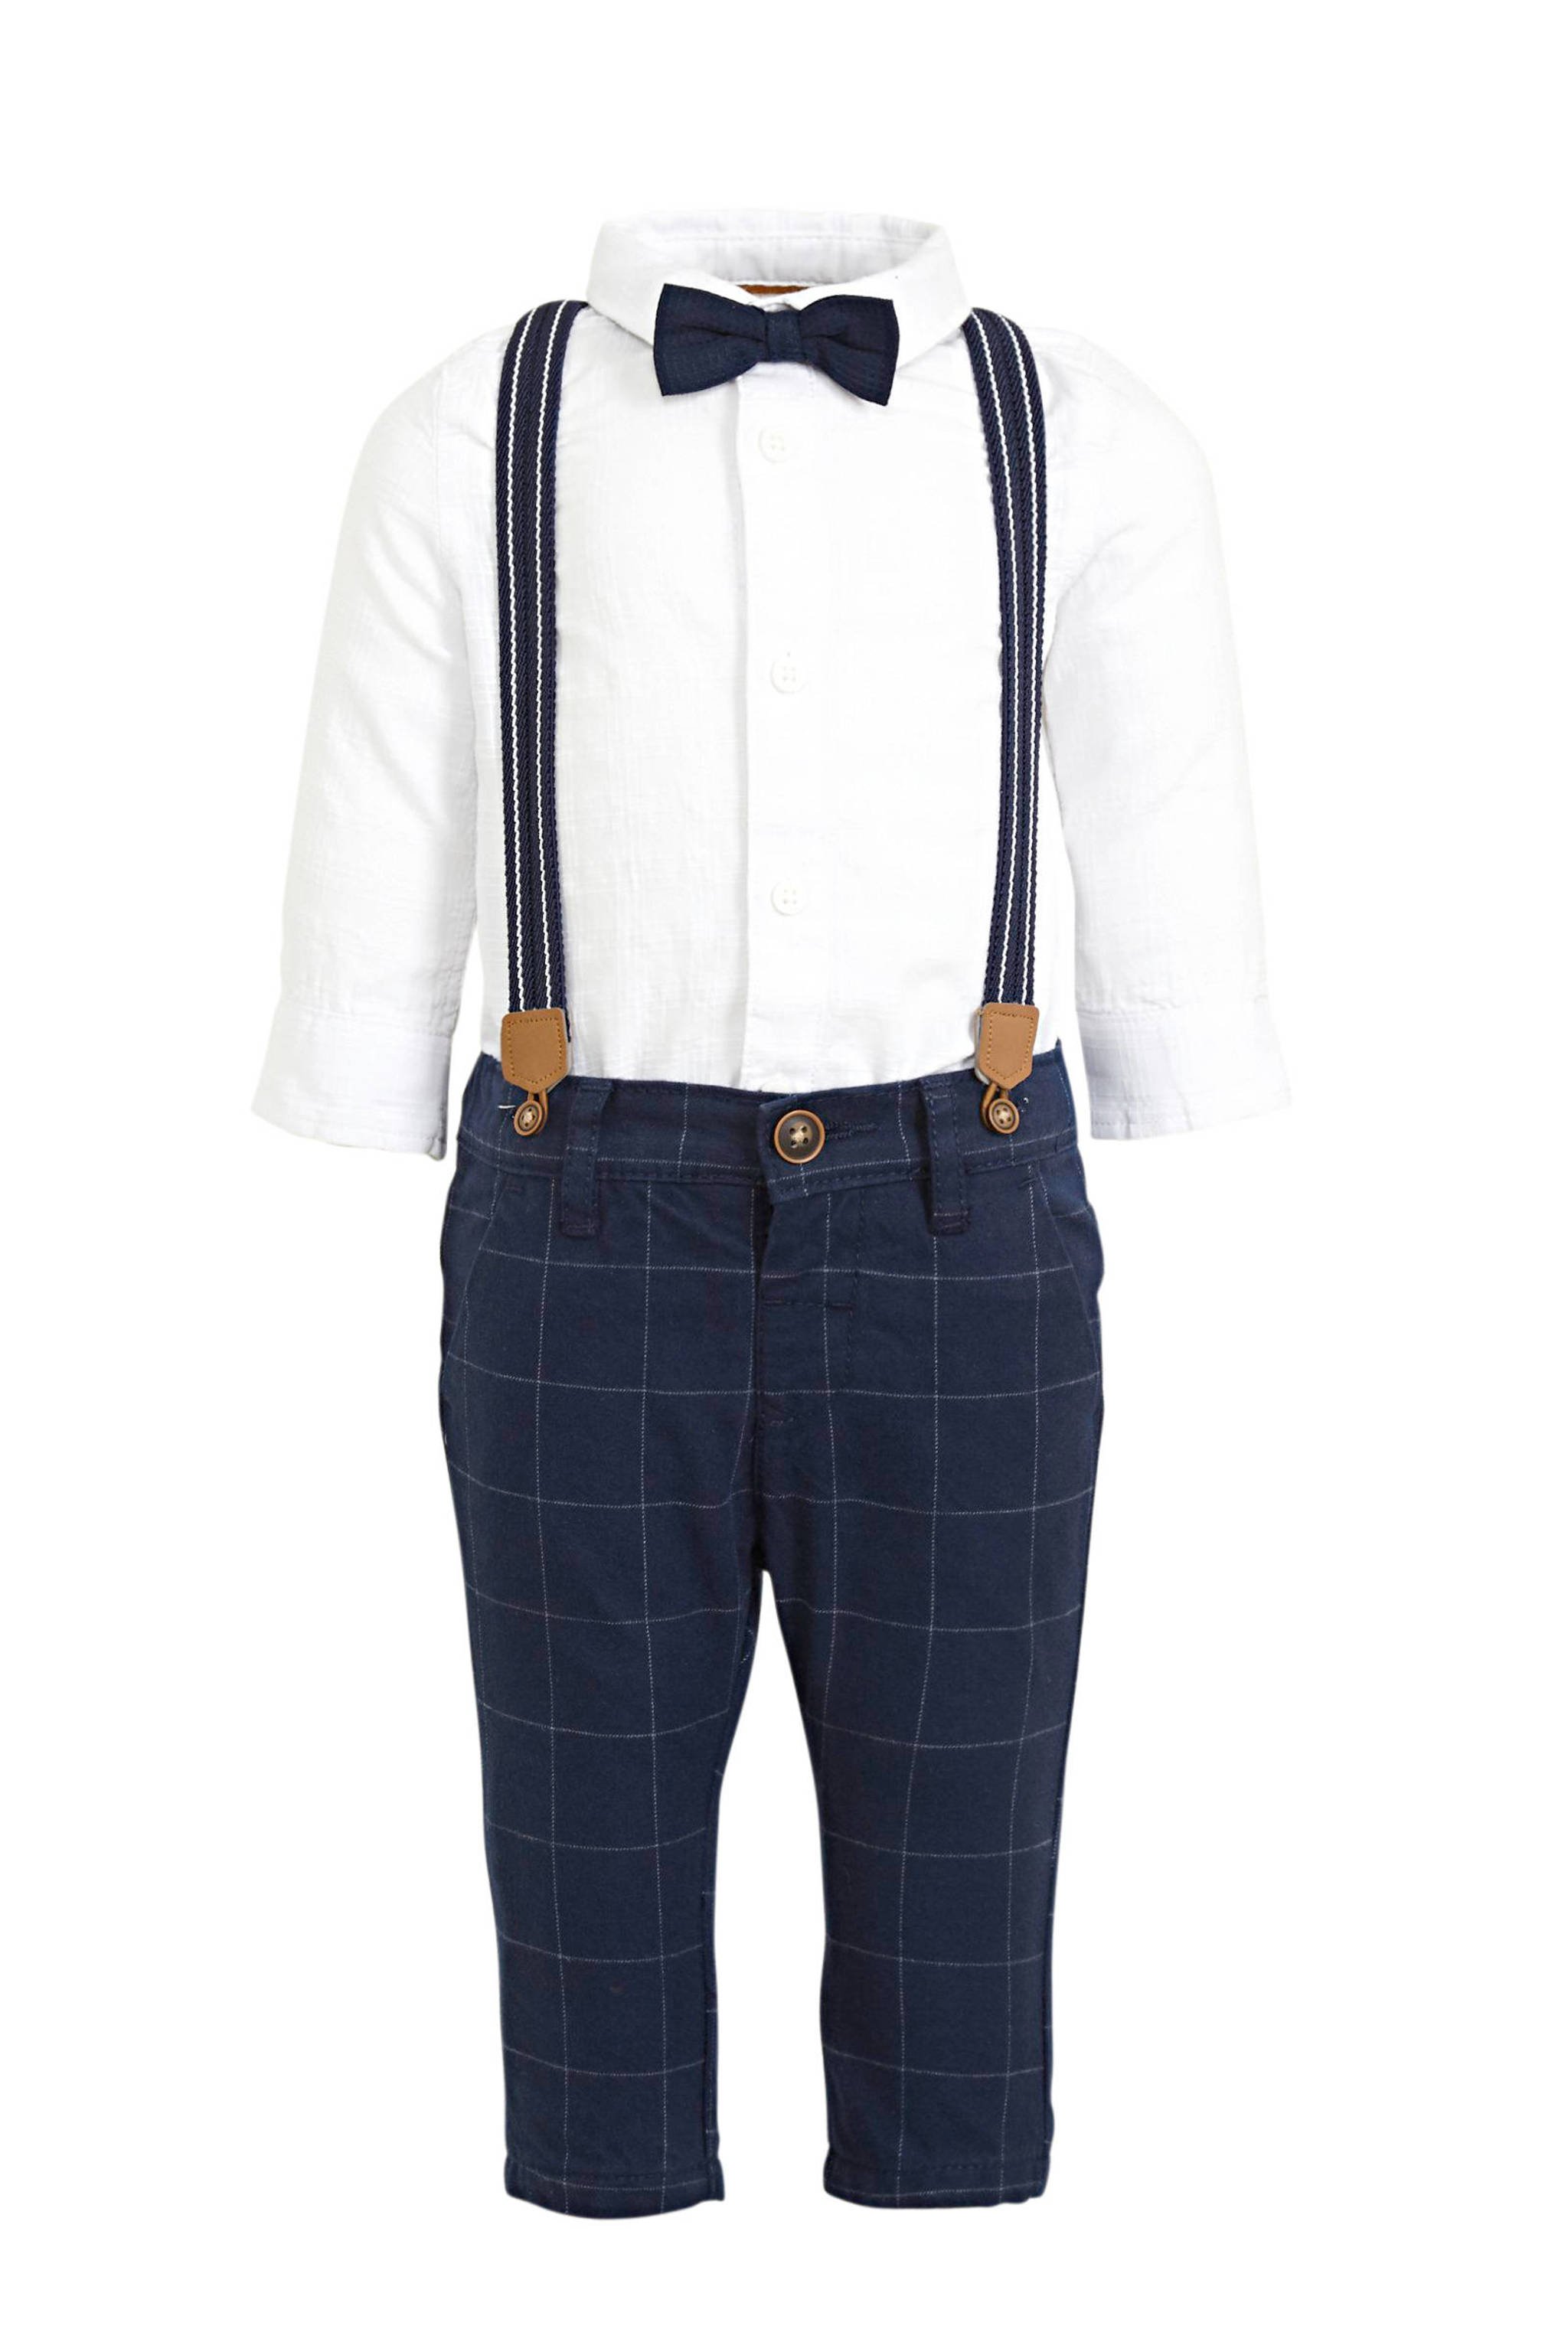 Autorisatie Ambitieus Zuivelproducten C&A Baby Club baby overhemd met broek + bretels + strik | wehkamp